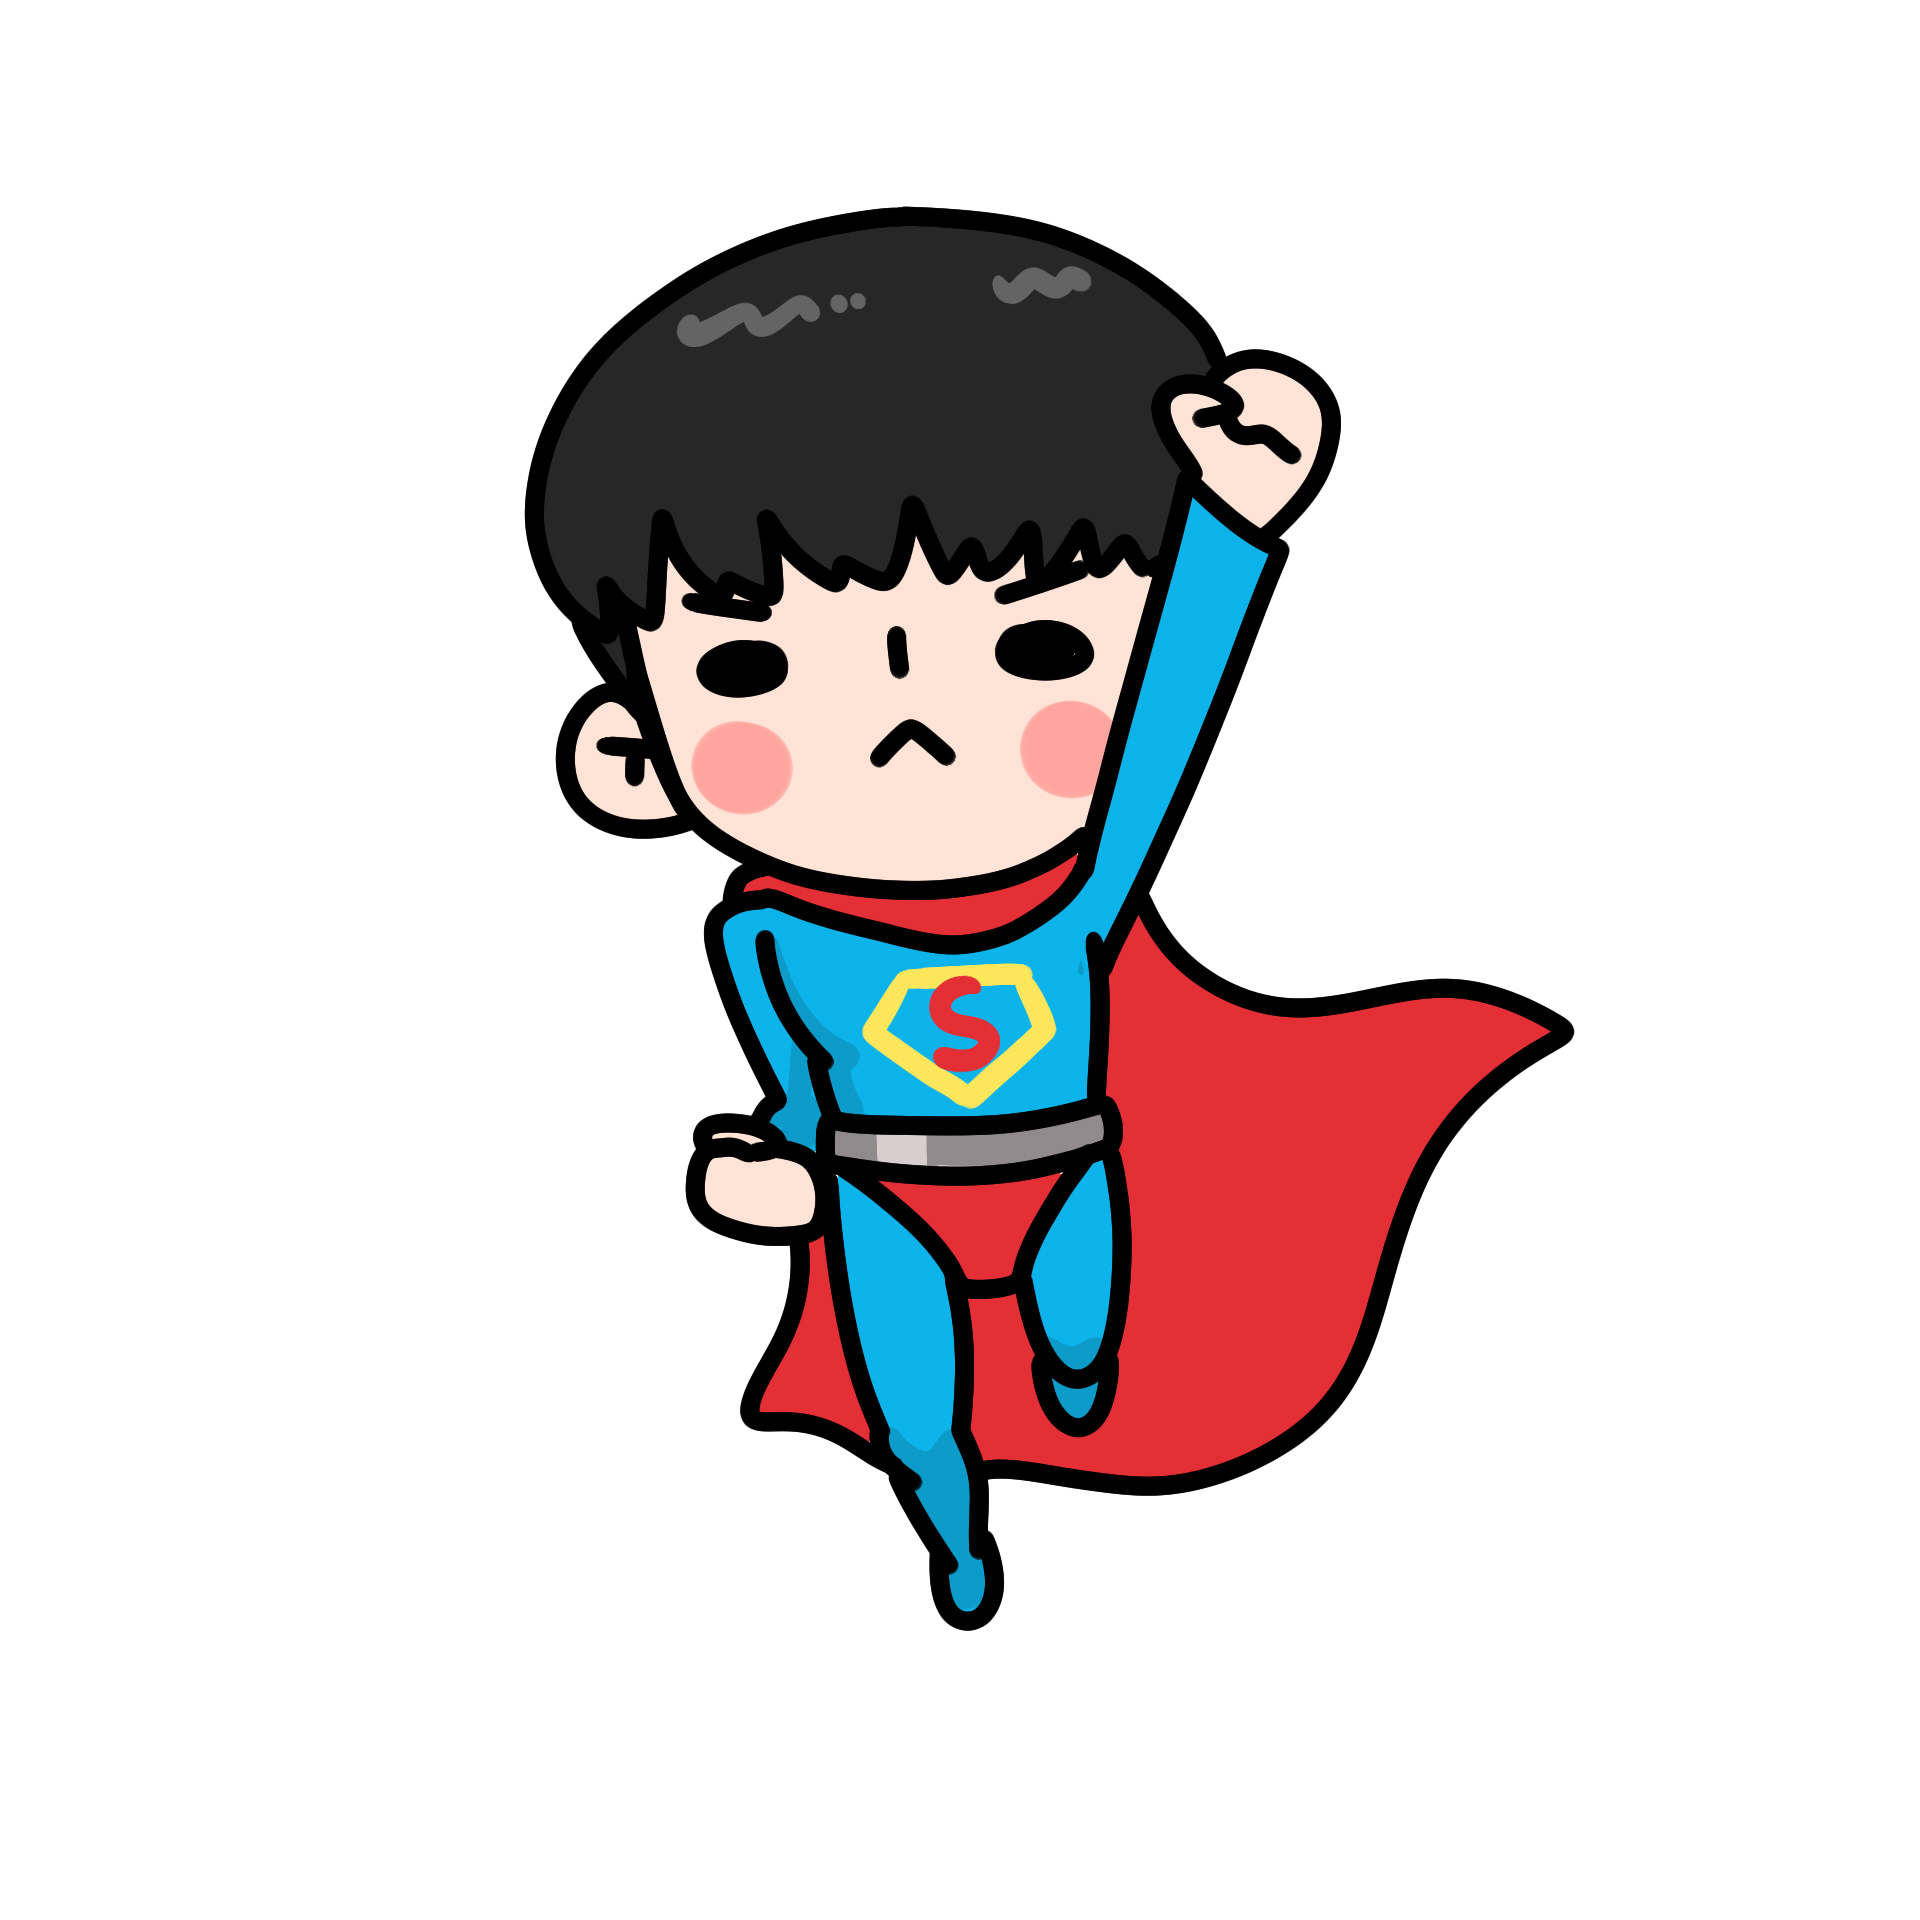 《超人》Superman卡通壁纸_卡通_太平洋科技